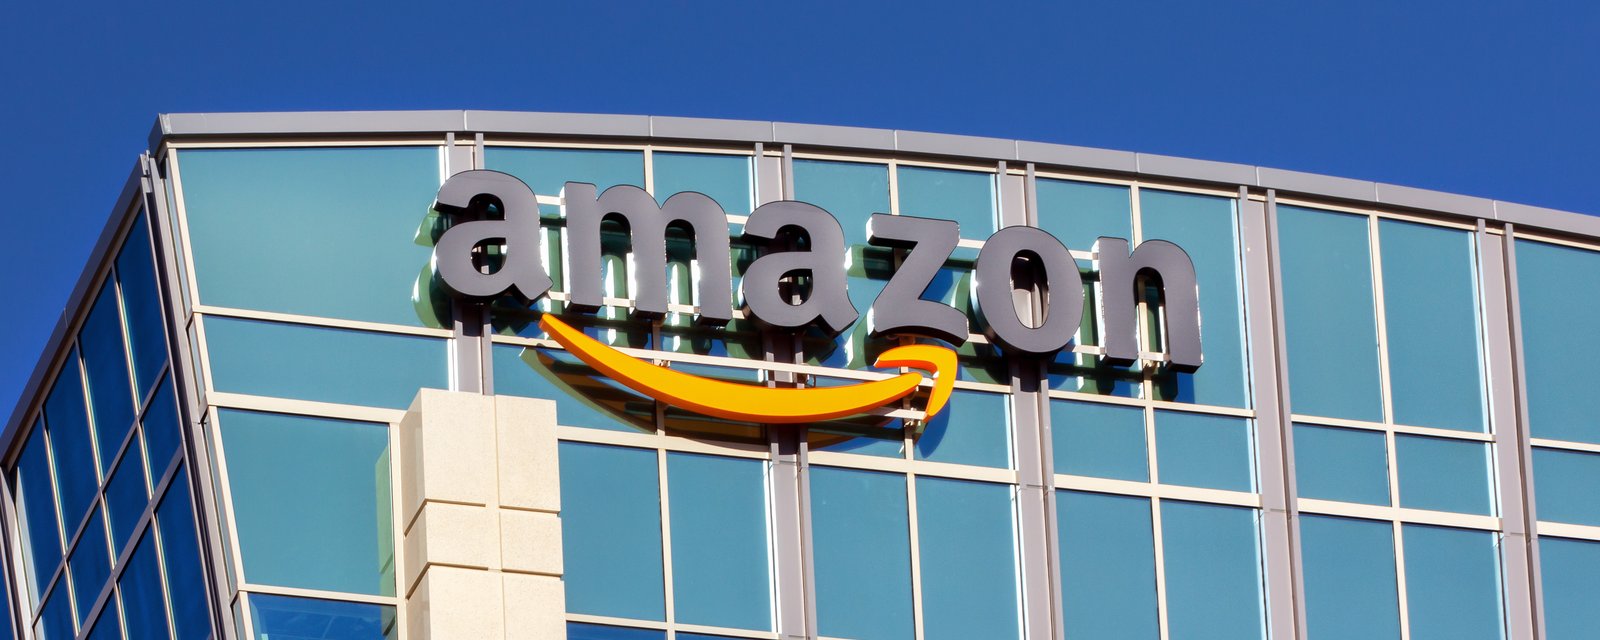 Le nombre de contrats que les gouvernements ont donné à Amazon ont explosé